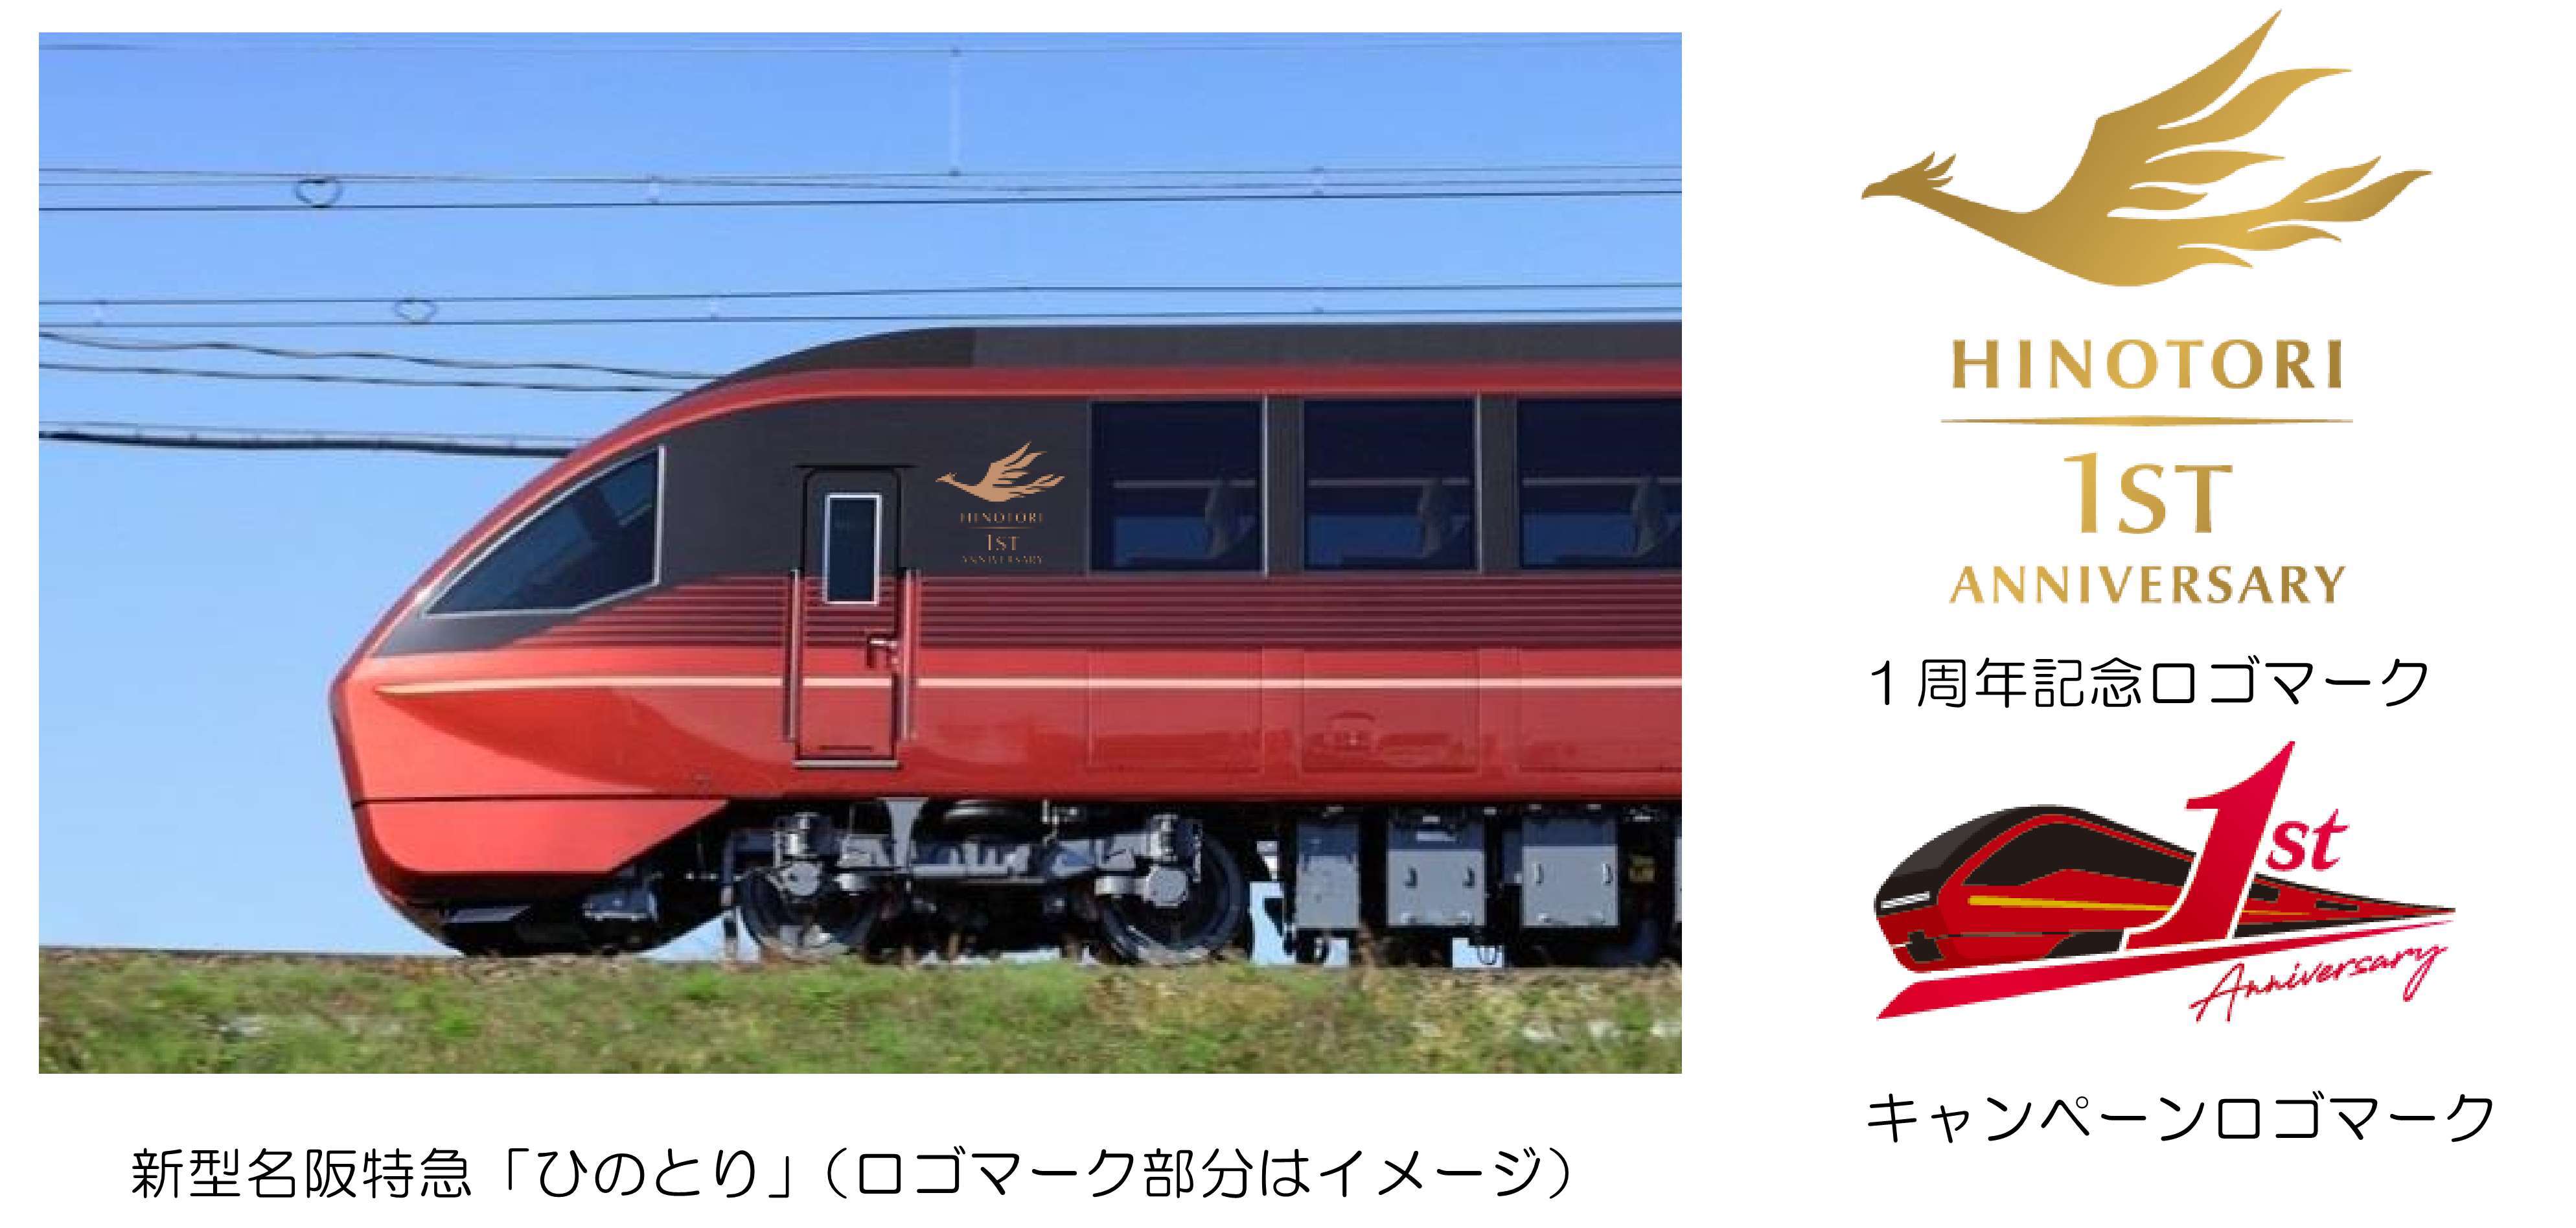 ひのとり 運行開始１周年記念キャンペーンを実施します 大阪 名古屋間の往復特急 利用のお客さまにはプレゼントキャンペーンを開催 近畿日本鉄道株式会社のプレスリリース